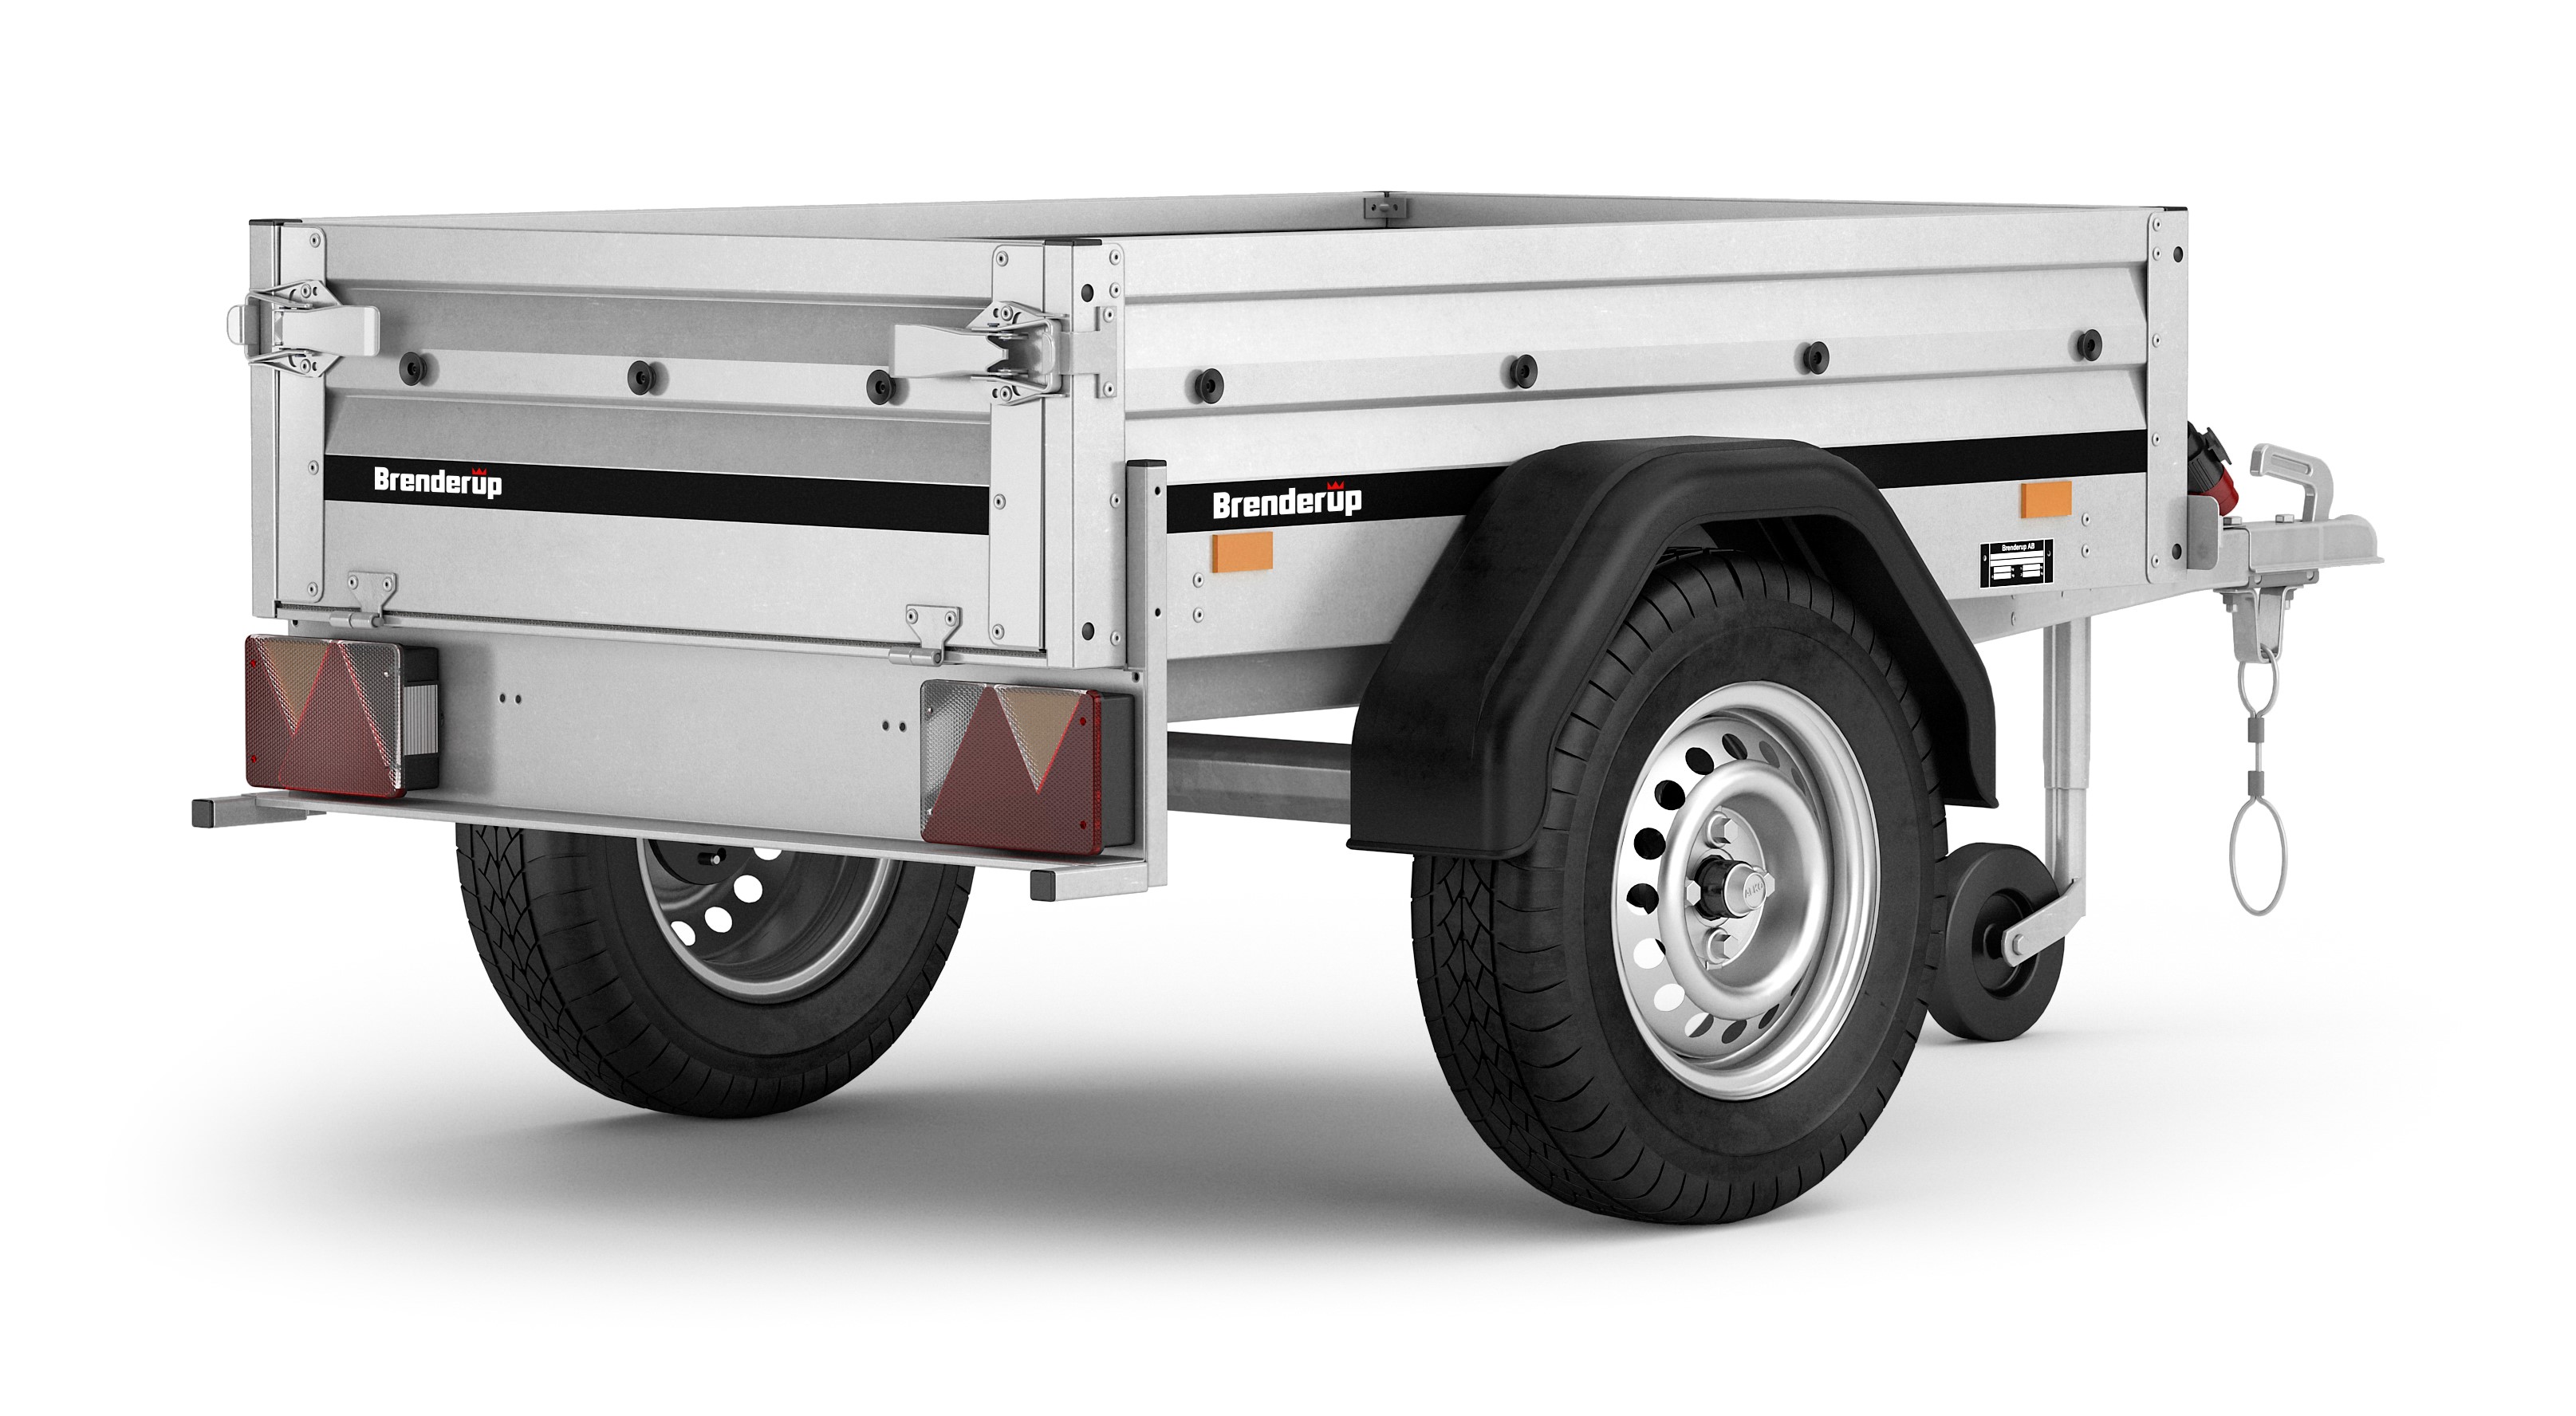 Billede af Brenderup Trailer 1150 Solid mindre trailer med tiltfunktion